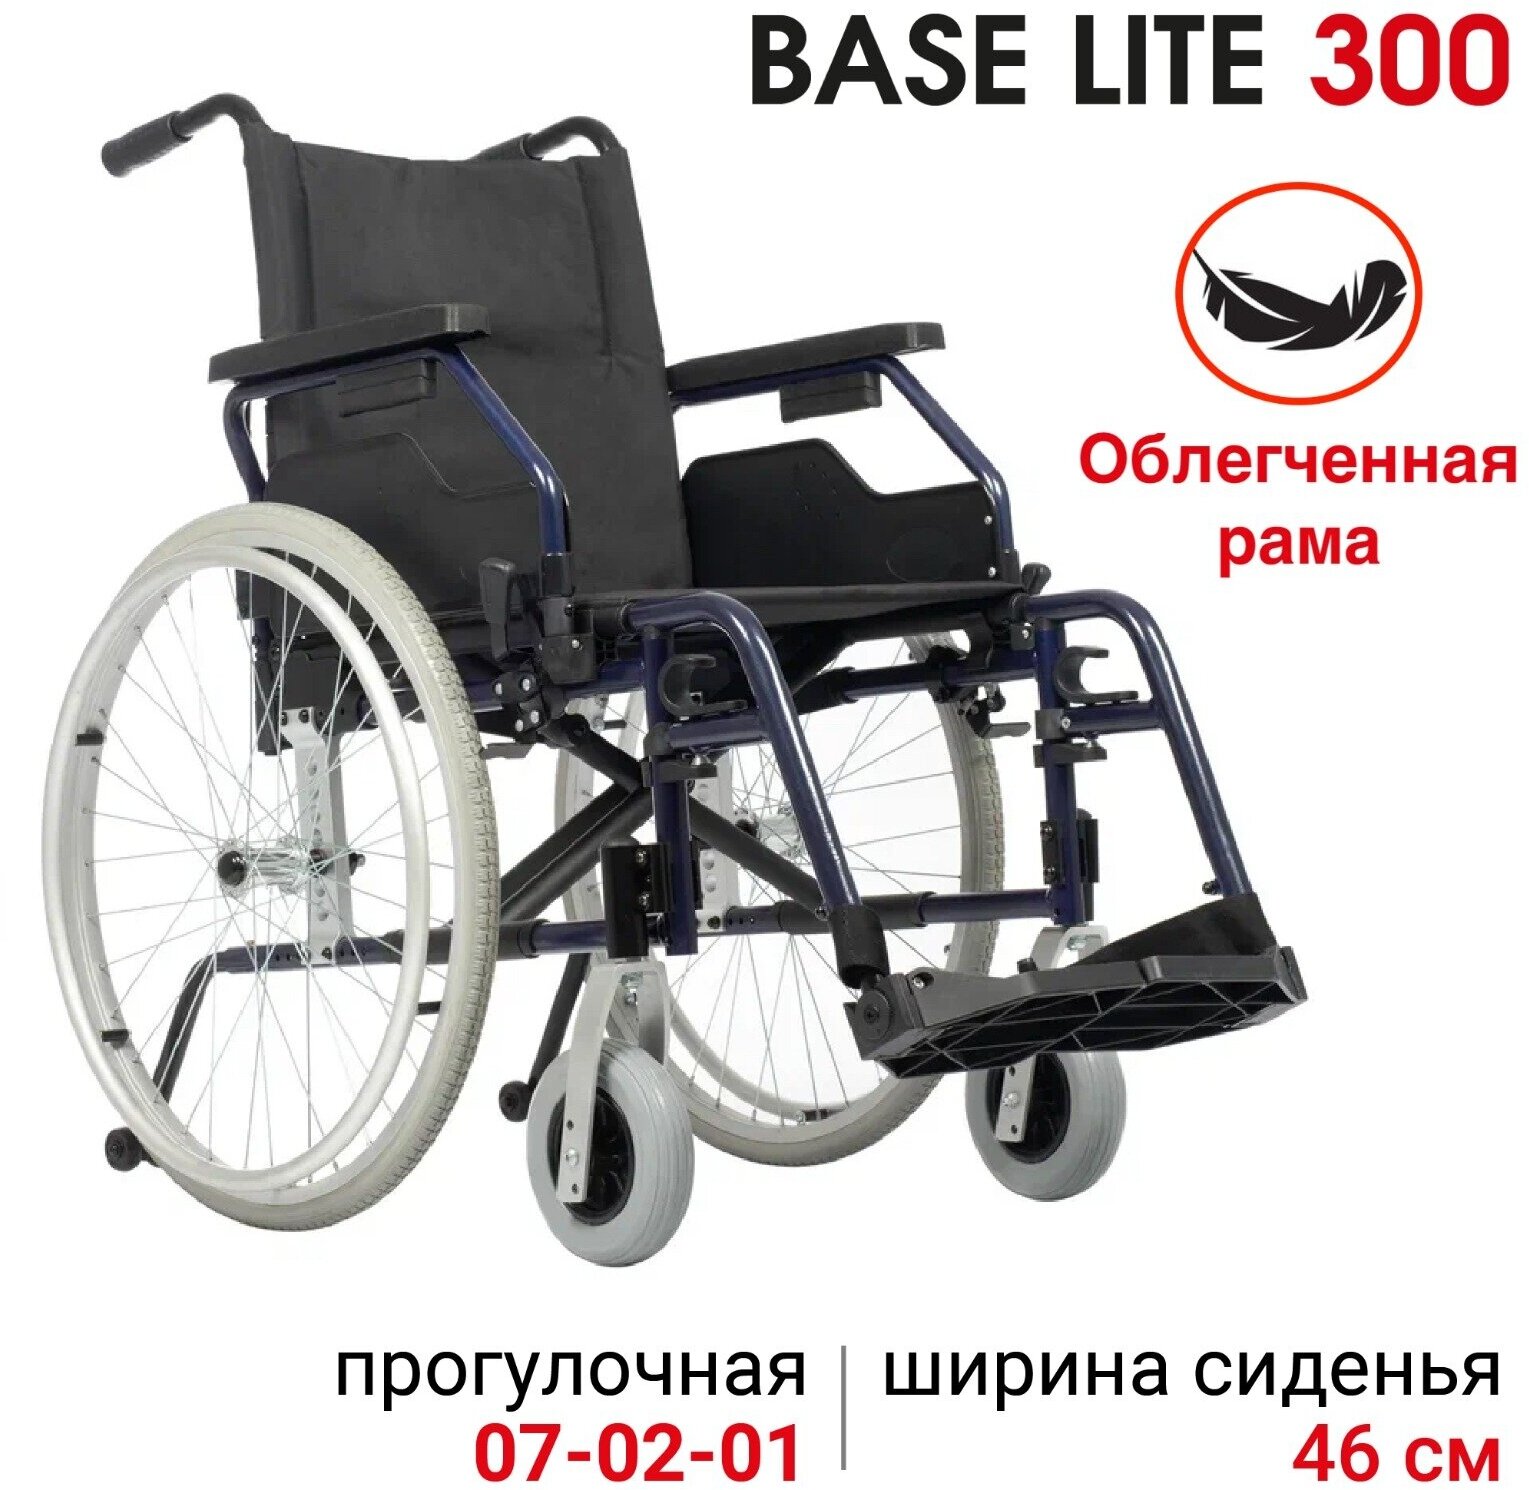 Кресло-коляска прогулочное Ortonica Trend 40/Base Lite 300 46PP складная со съемными подлокотниками и подножками ширина сиденья 46 см 4 пневматических колеса